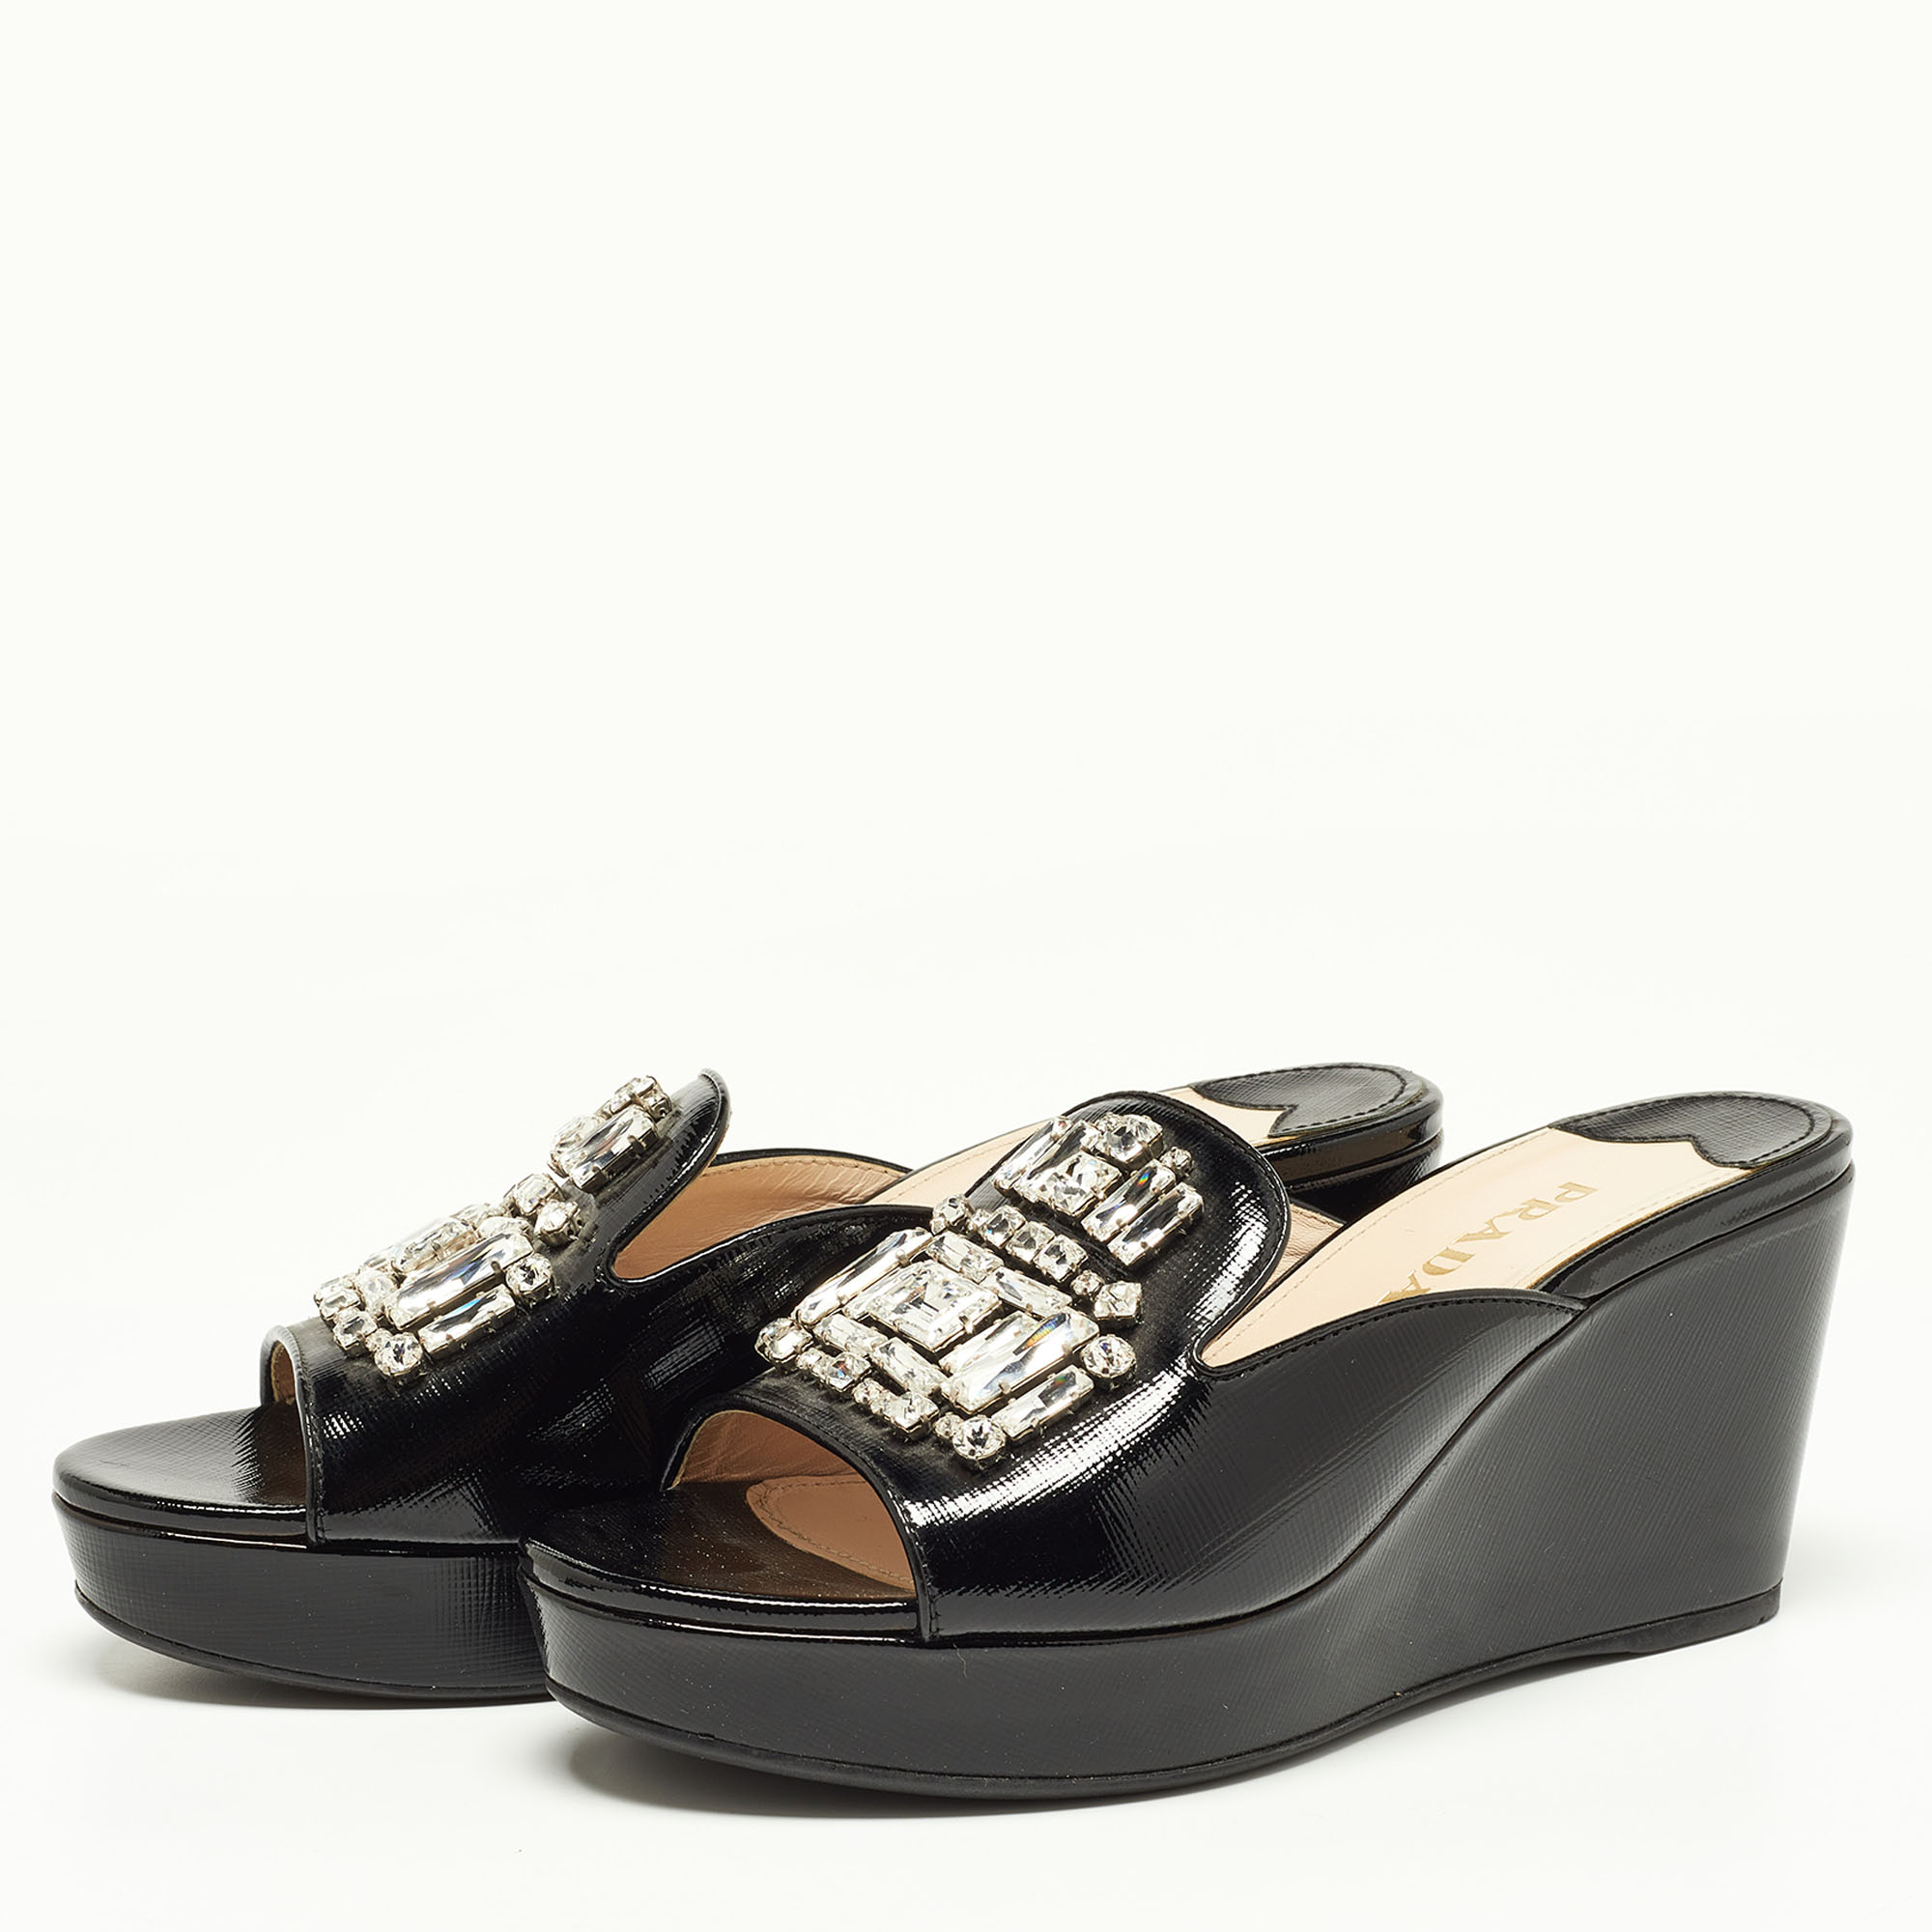 

Prada Black Saffiano Patent Leather Crystal Embellished Platform Wedge Sandals Size